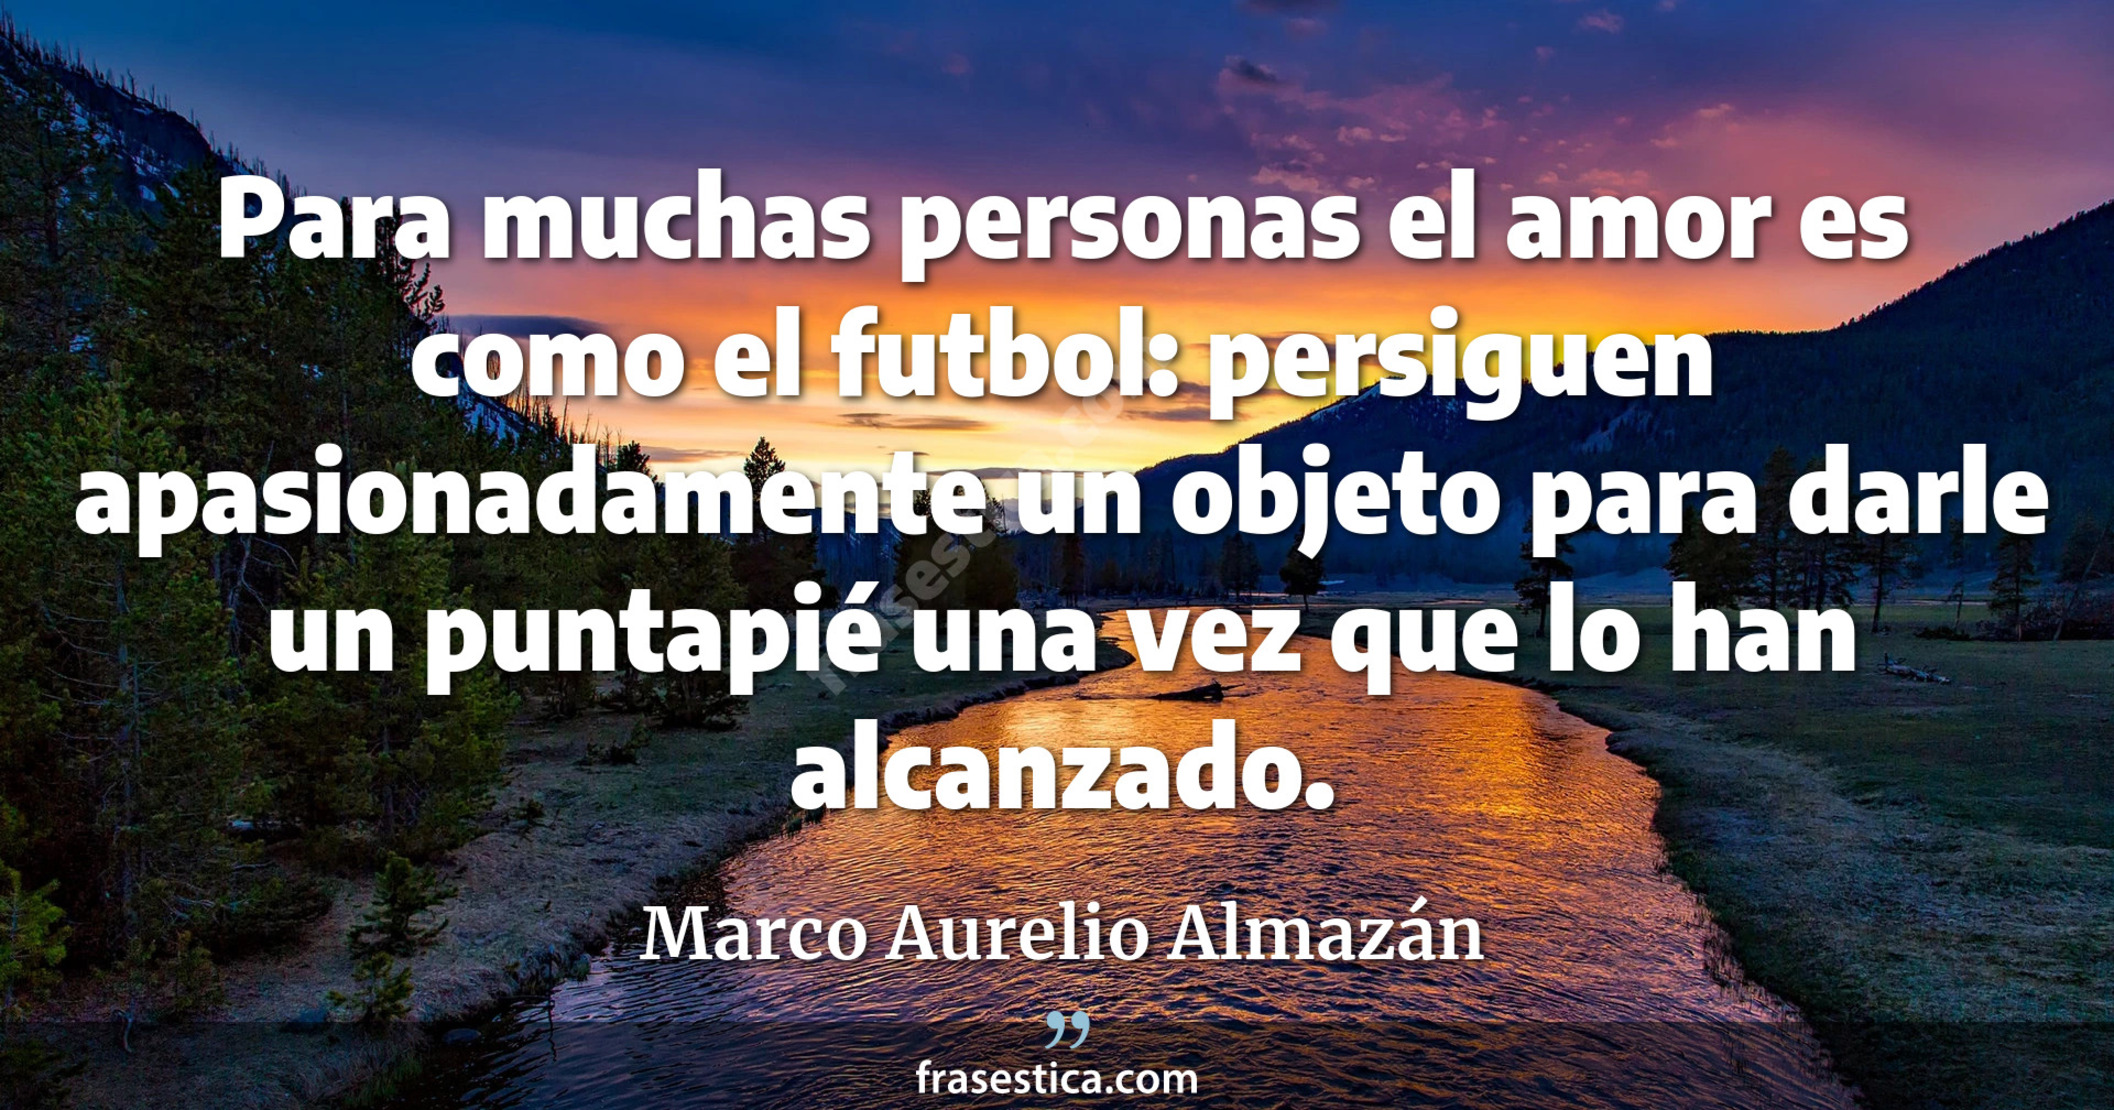 Para muchas personas el amor es como el futbol: persiguen apasionadamente un objeto para darle un puntapié una vez que lo han alcanzado. - Marco Aurelio Almazán